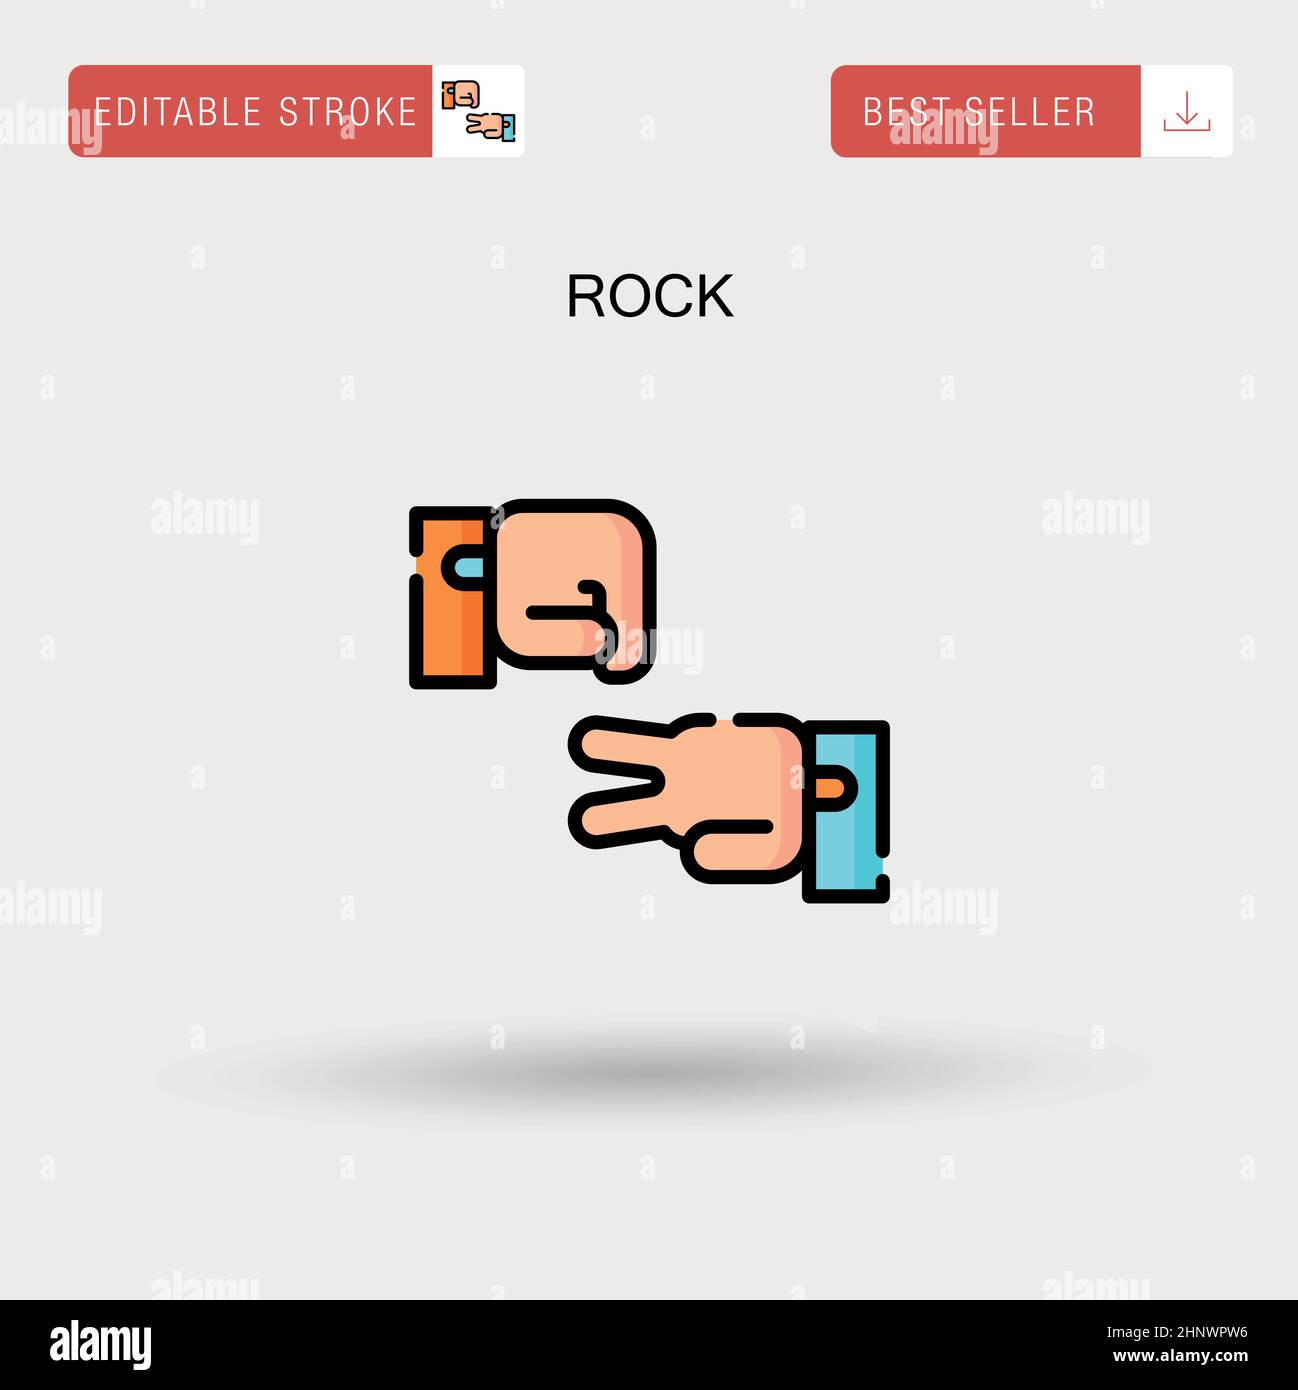 Rock Simple vector icon. Stock Vector